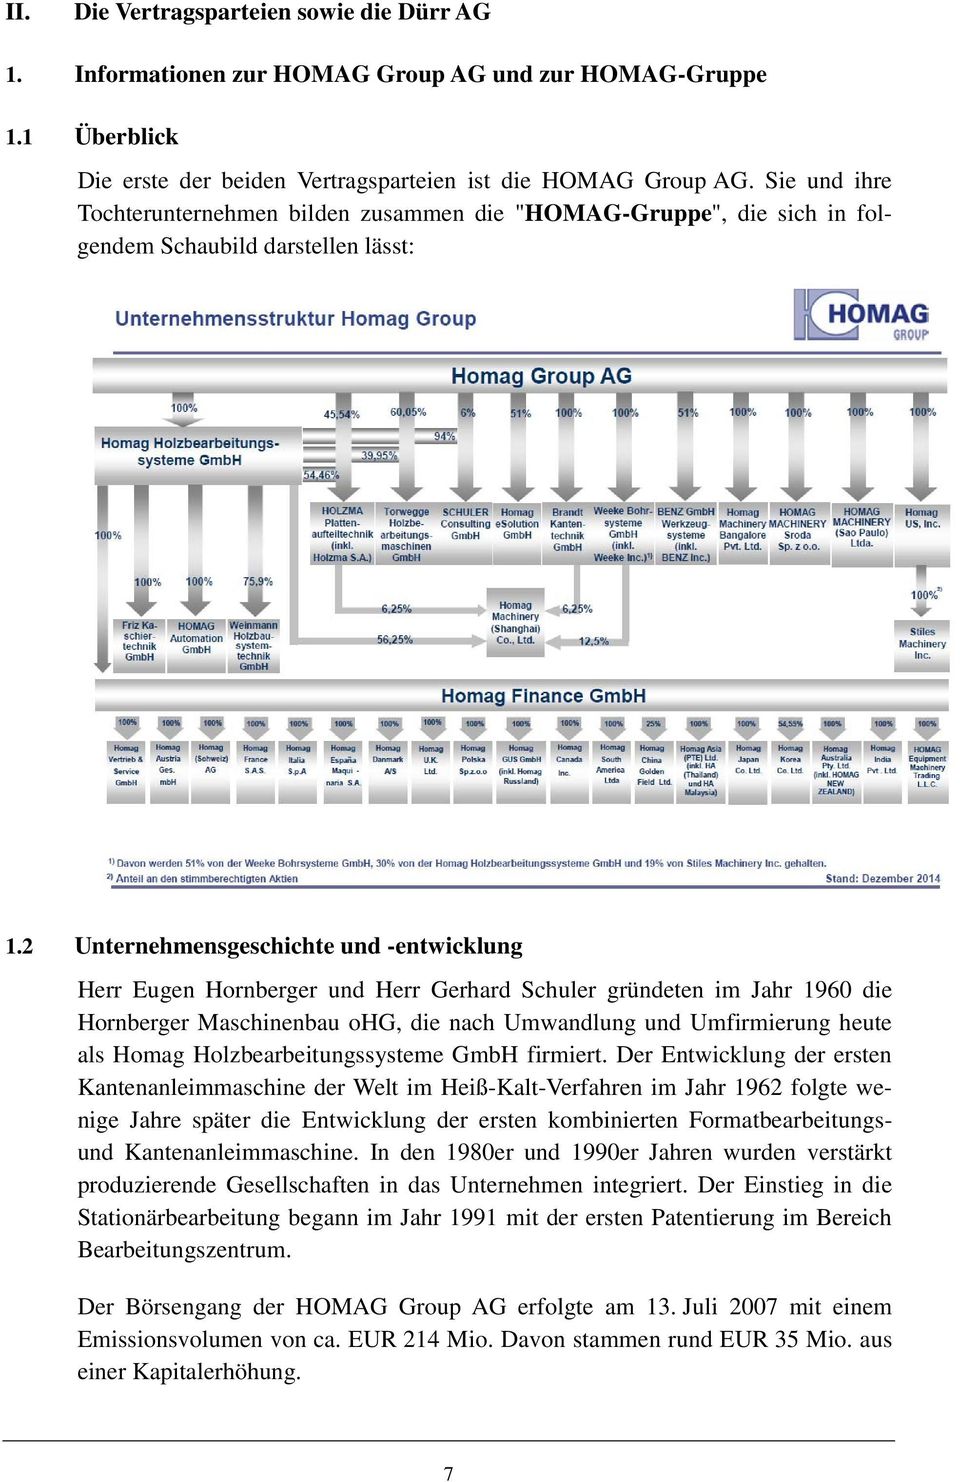 2 Unternehmensgeschichte und -entwicklung Herr Eugen Hornberger und Herr Gerhard Schuler gründeten im Jahr 1960 die Hornberger Maschinenbau ohg, die nach Umwandlung und Umfirmierung heute als Homag